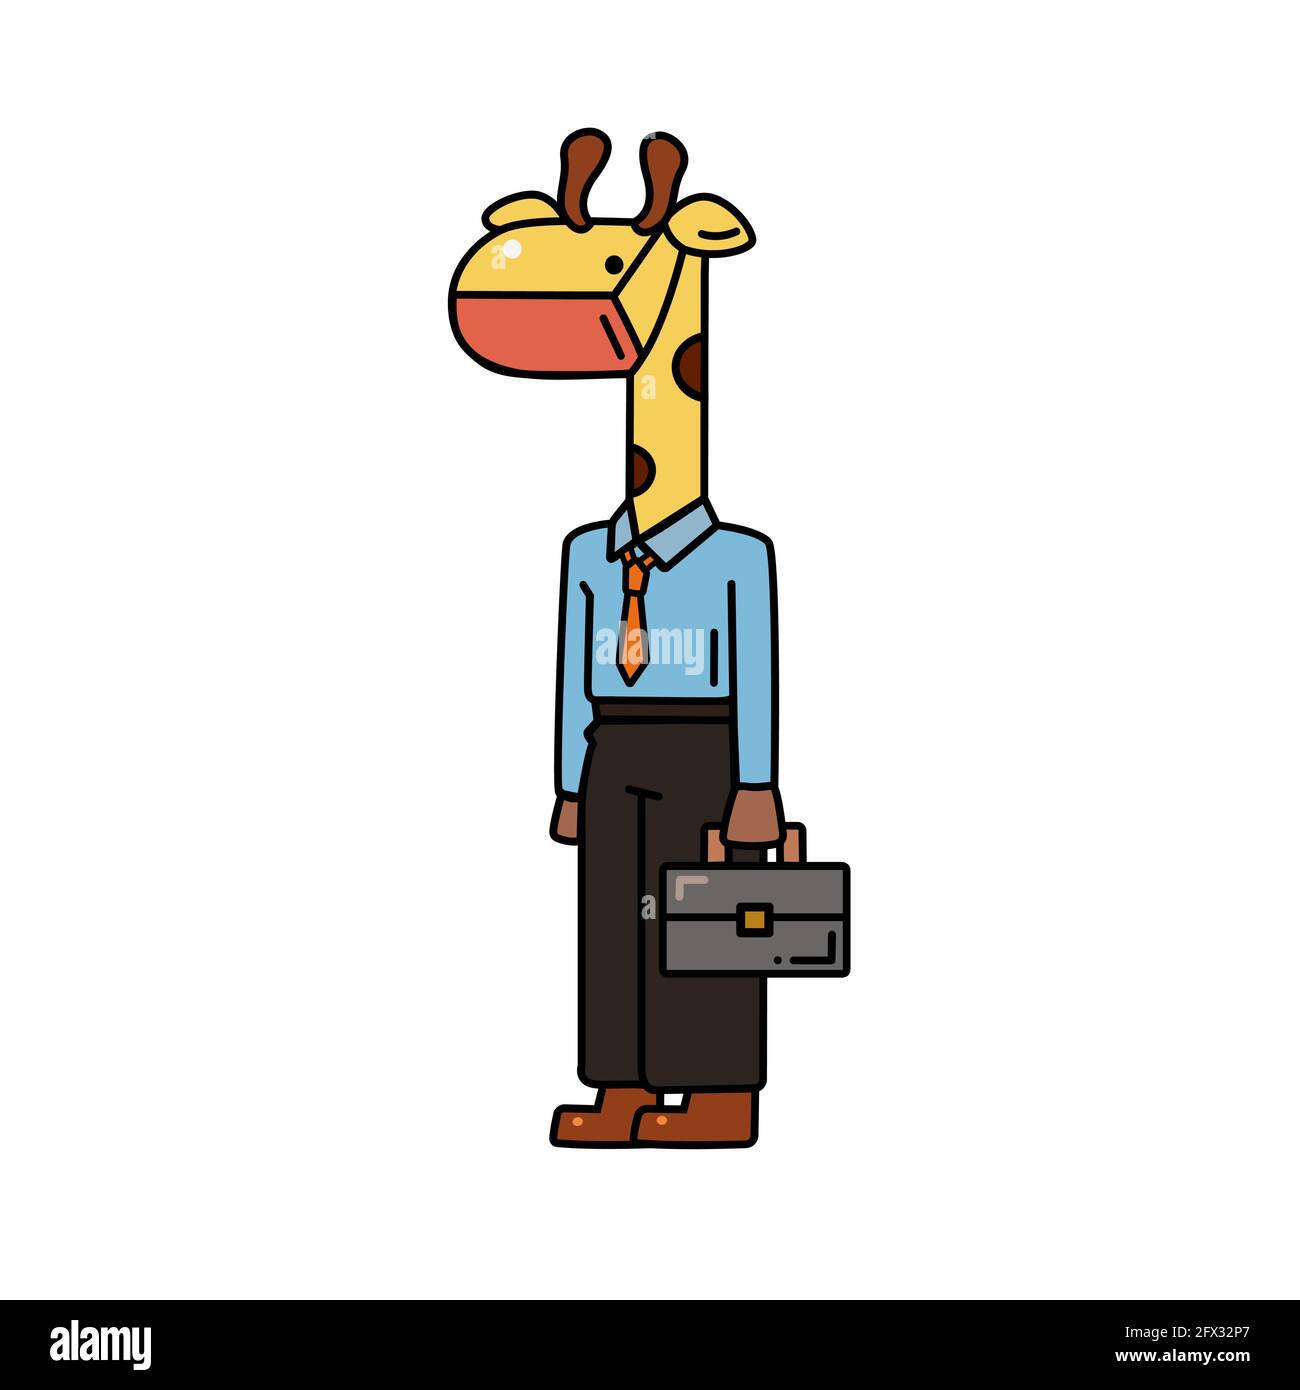 Une girafe mignonne portant un masque sanitaire empêchent le coronavirus, la grippe, la poussière personnage de dessin animé avec le contour noir à dessin vectoriel plat isolé sur la bande blanche Illustration de Vecteur